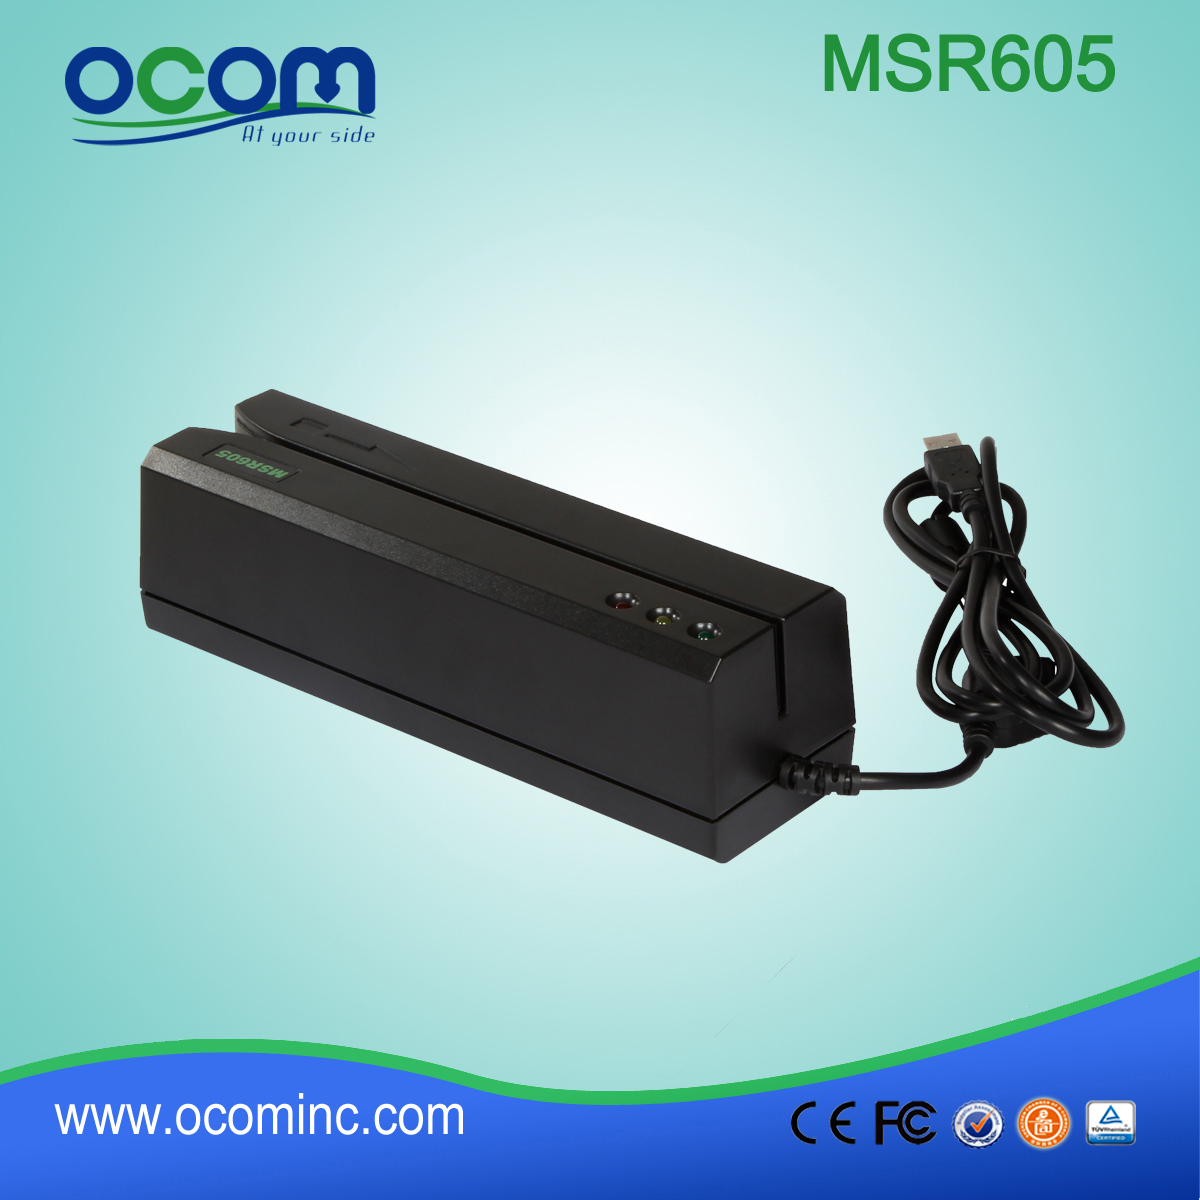 (MSR605) Cina ha fatto mini lettore di schede e writter RS232, lettore di schede e writter USB